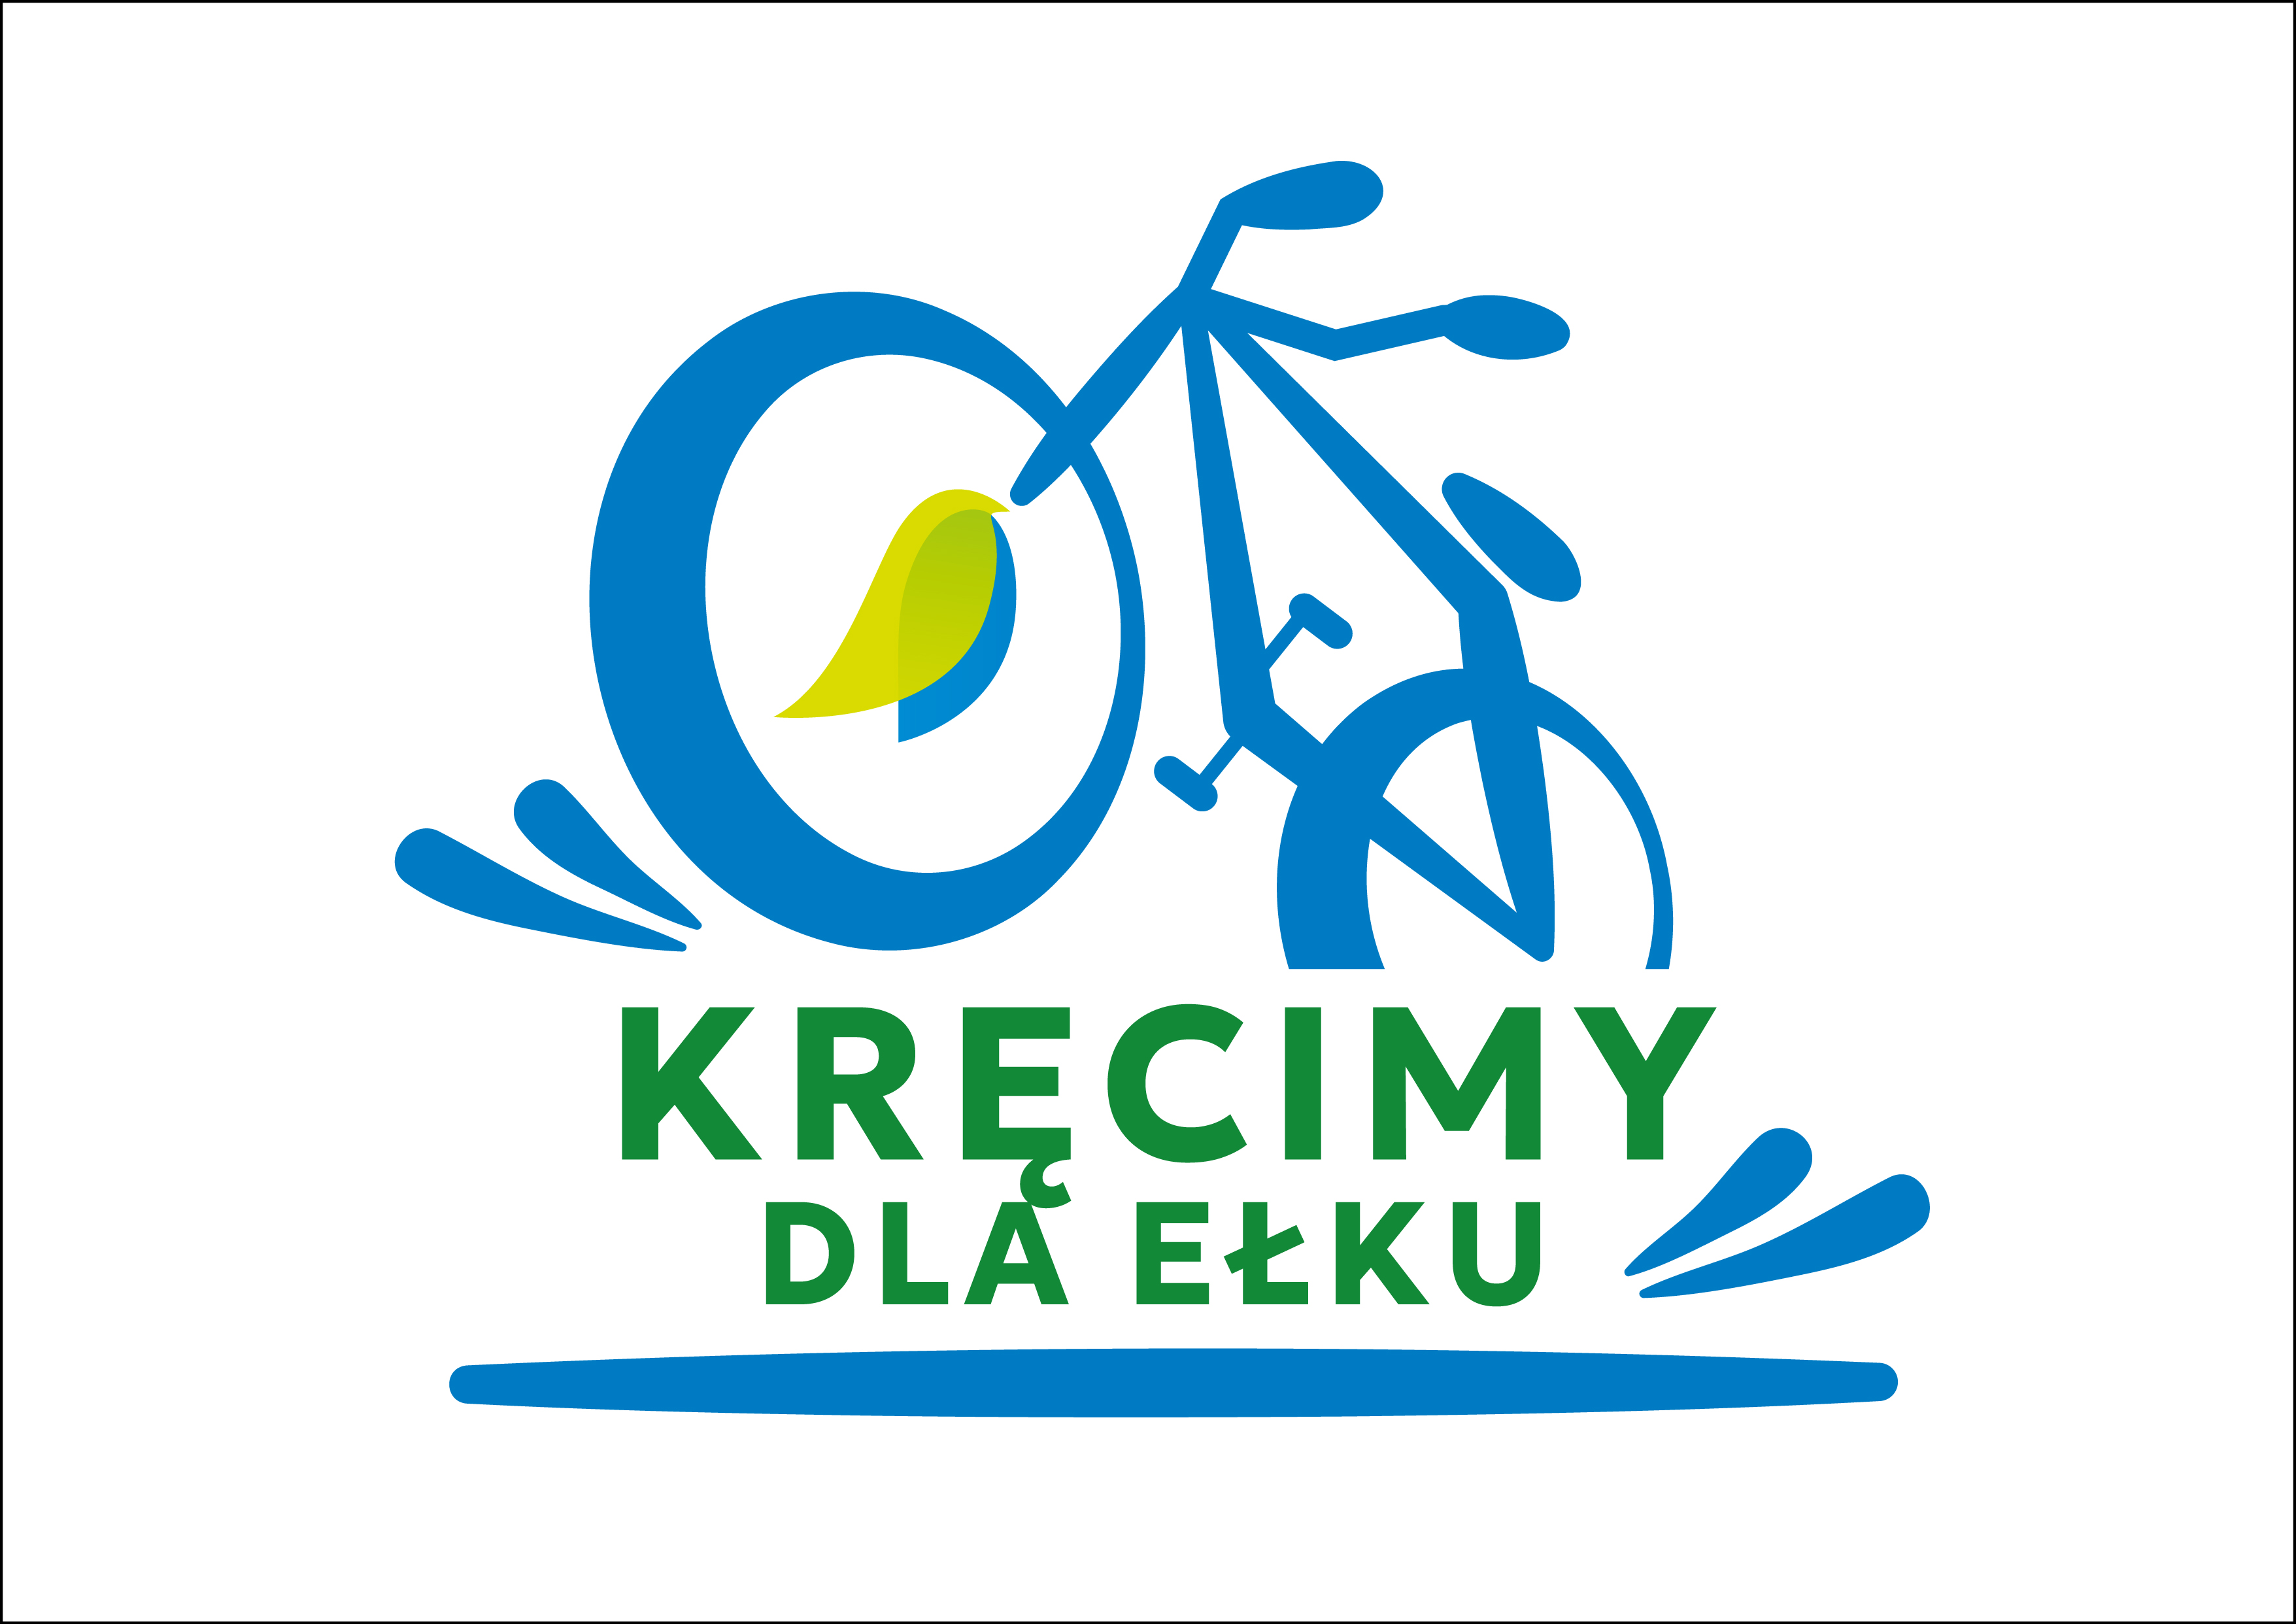 У Элка есть шанс стать велосипедной столицей Польши